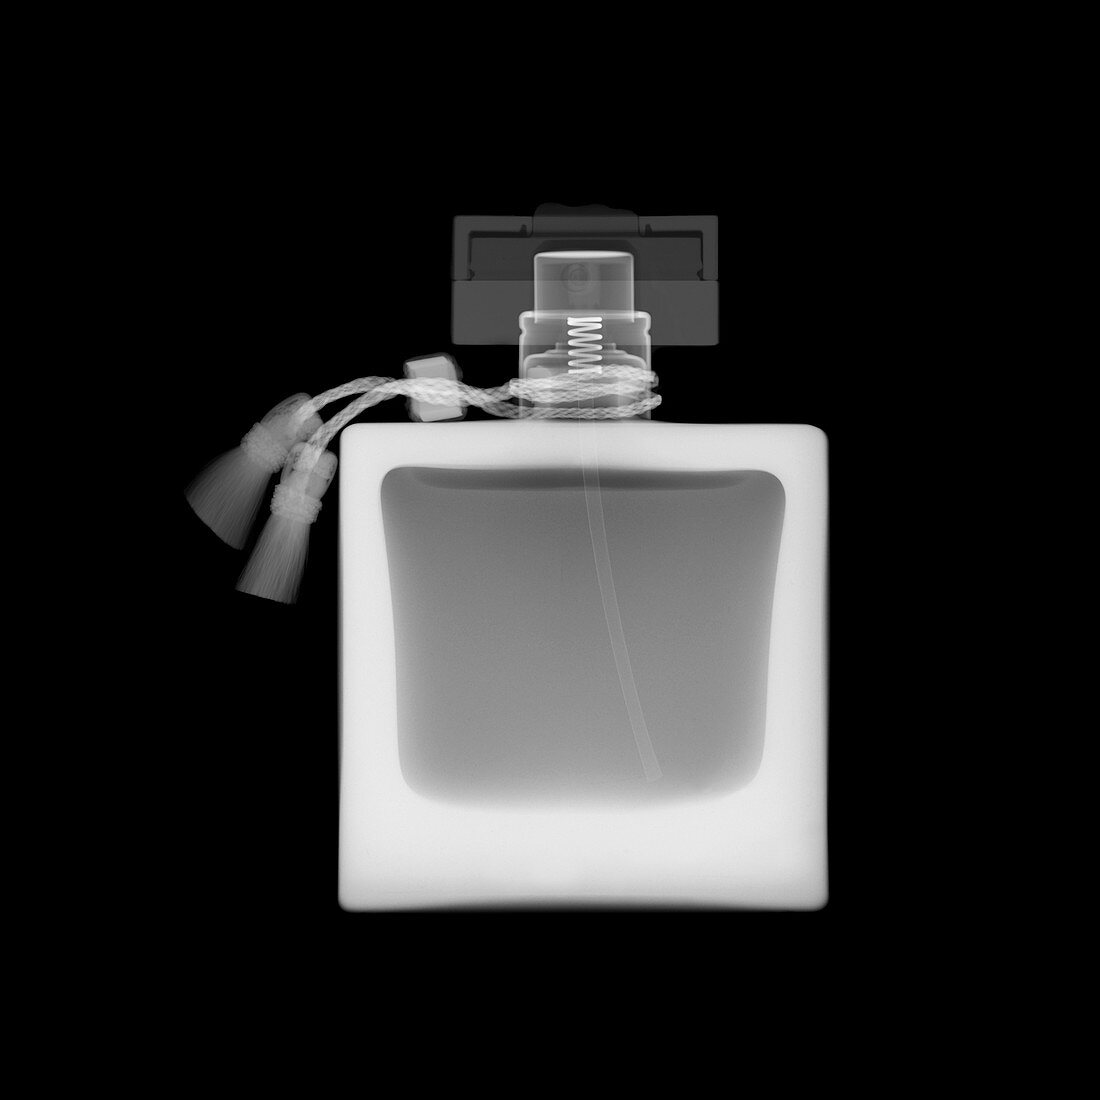 Perfume bottle, X-ray